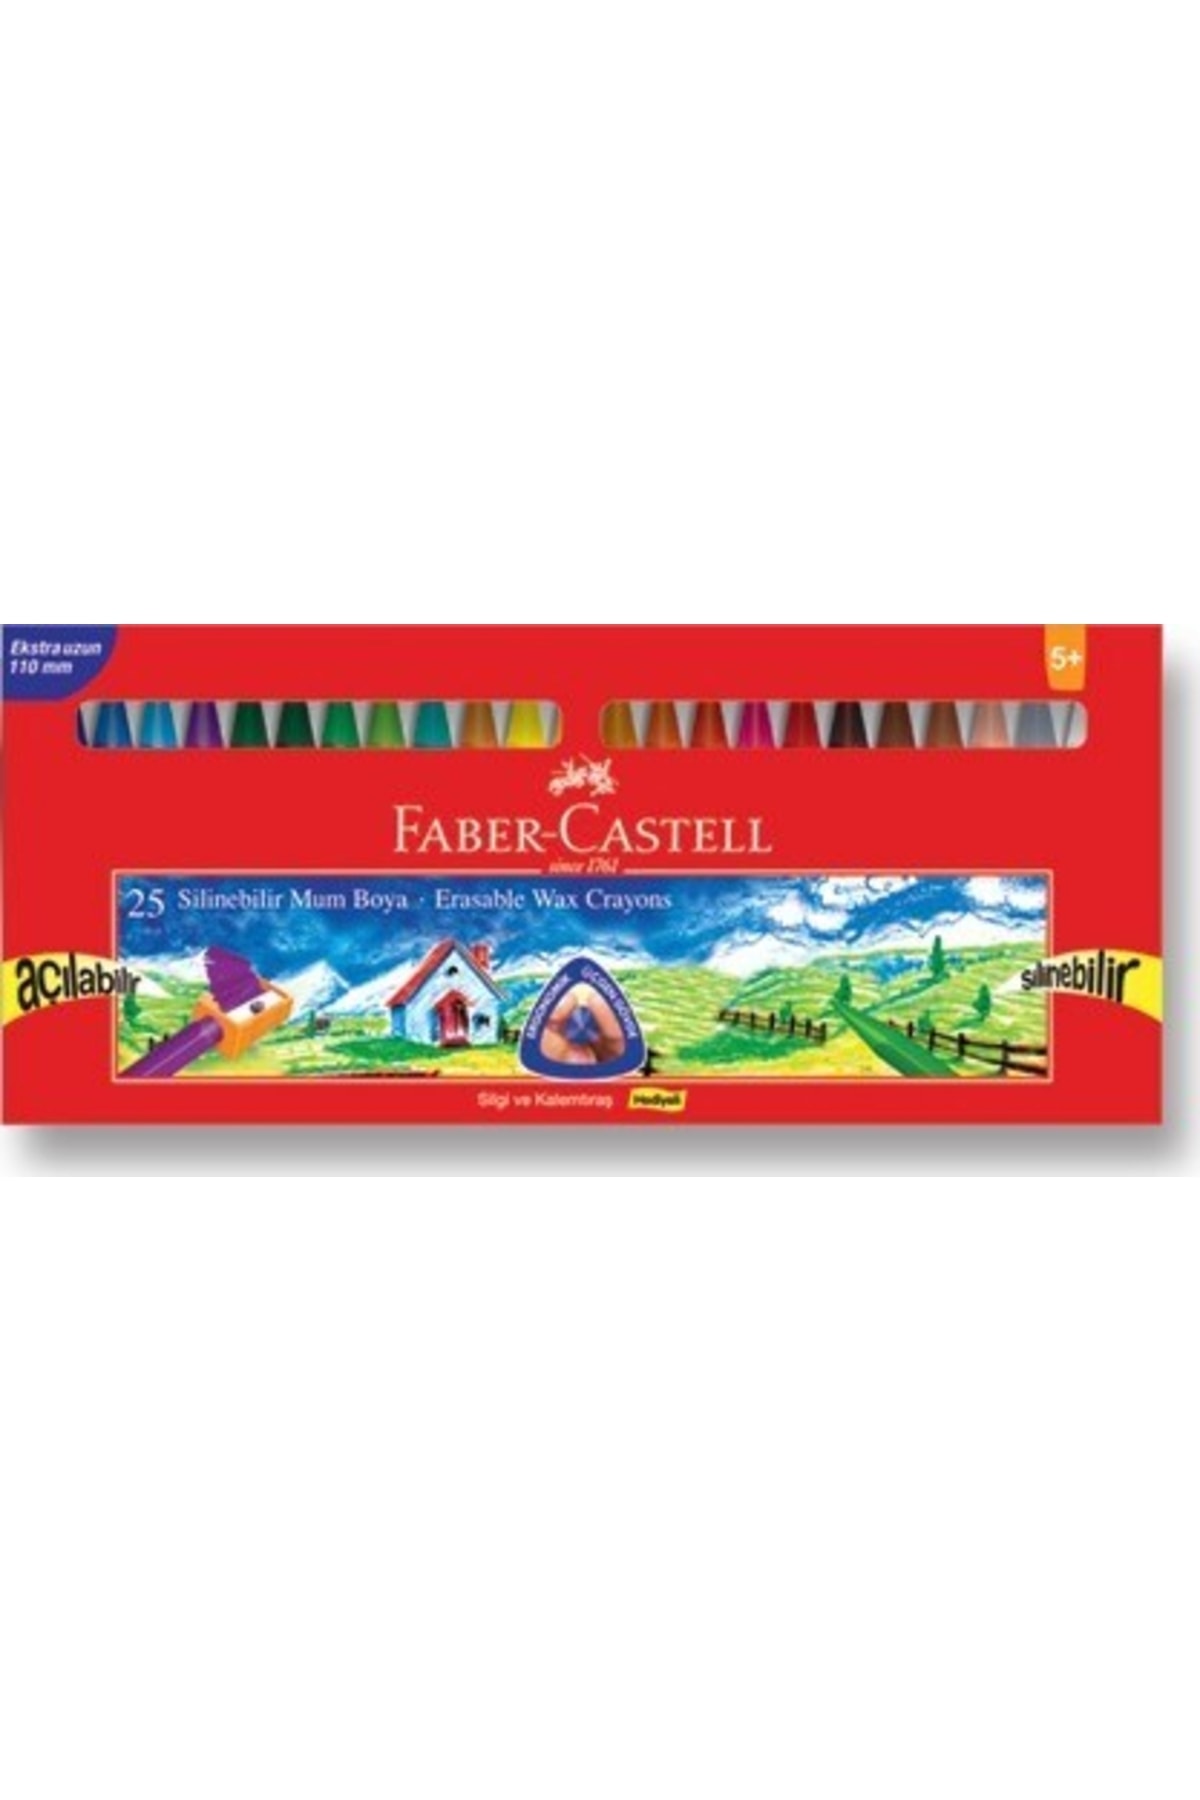 Faber Castell Faber-castell Silinebilir Mum Boya 25 Renk